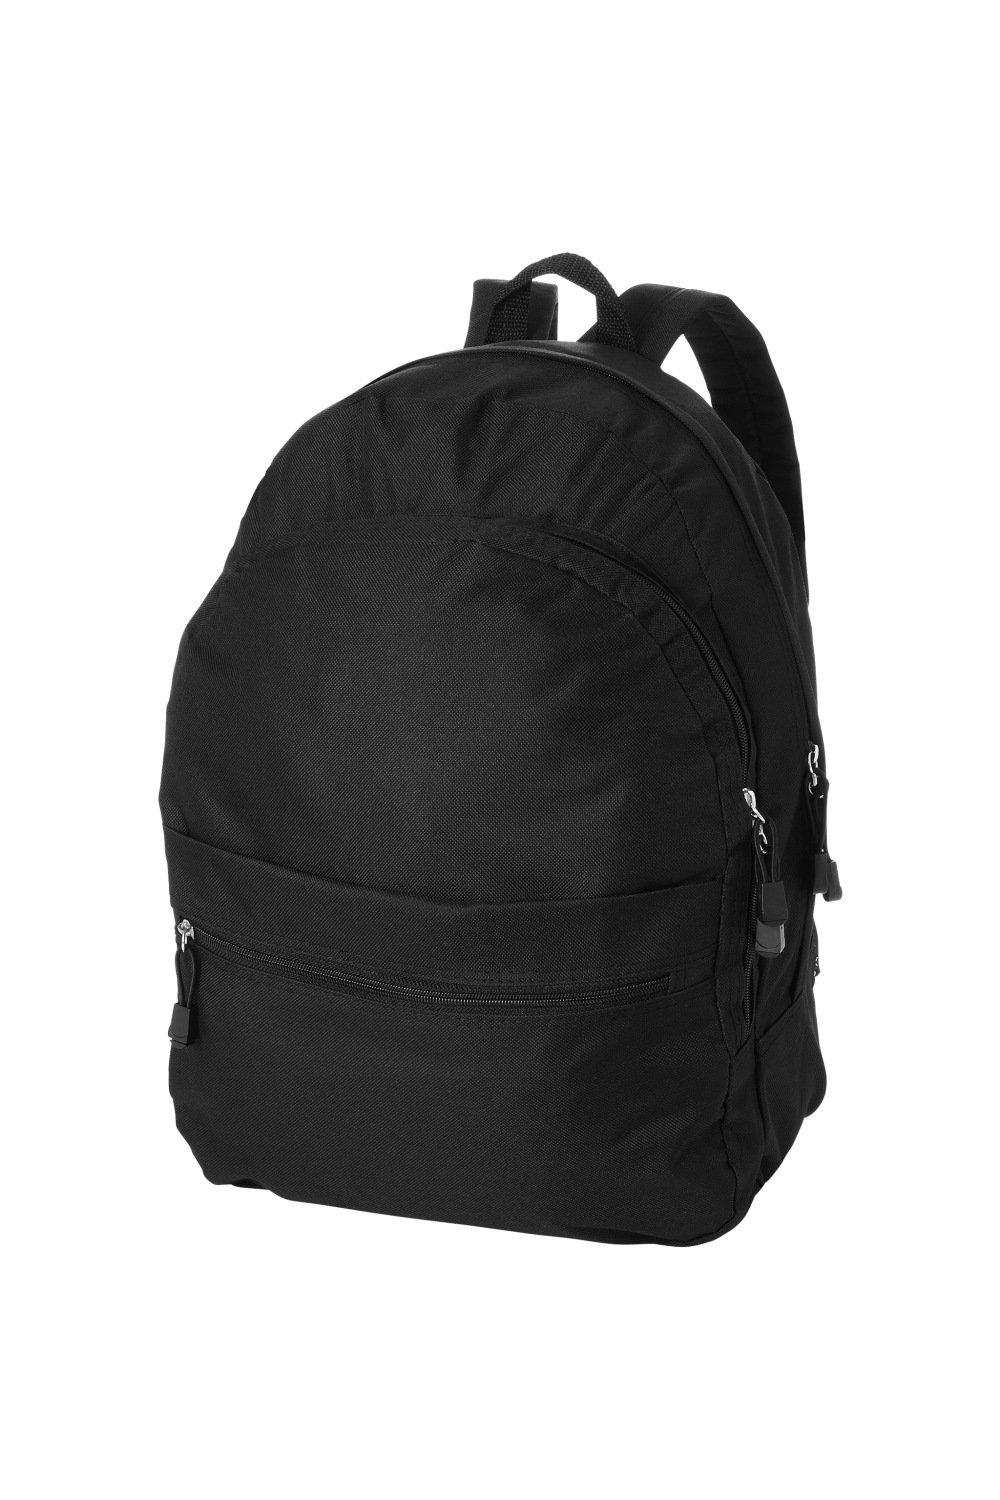 Трендовый рюкзак Bullet, черный рюкзак с карманом единорог 1 шт